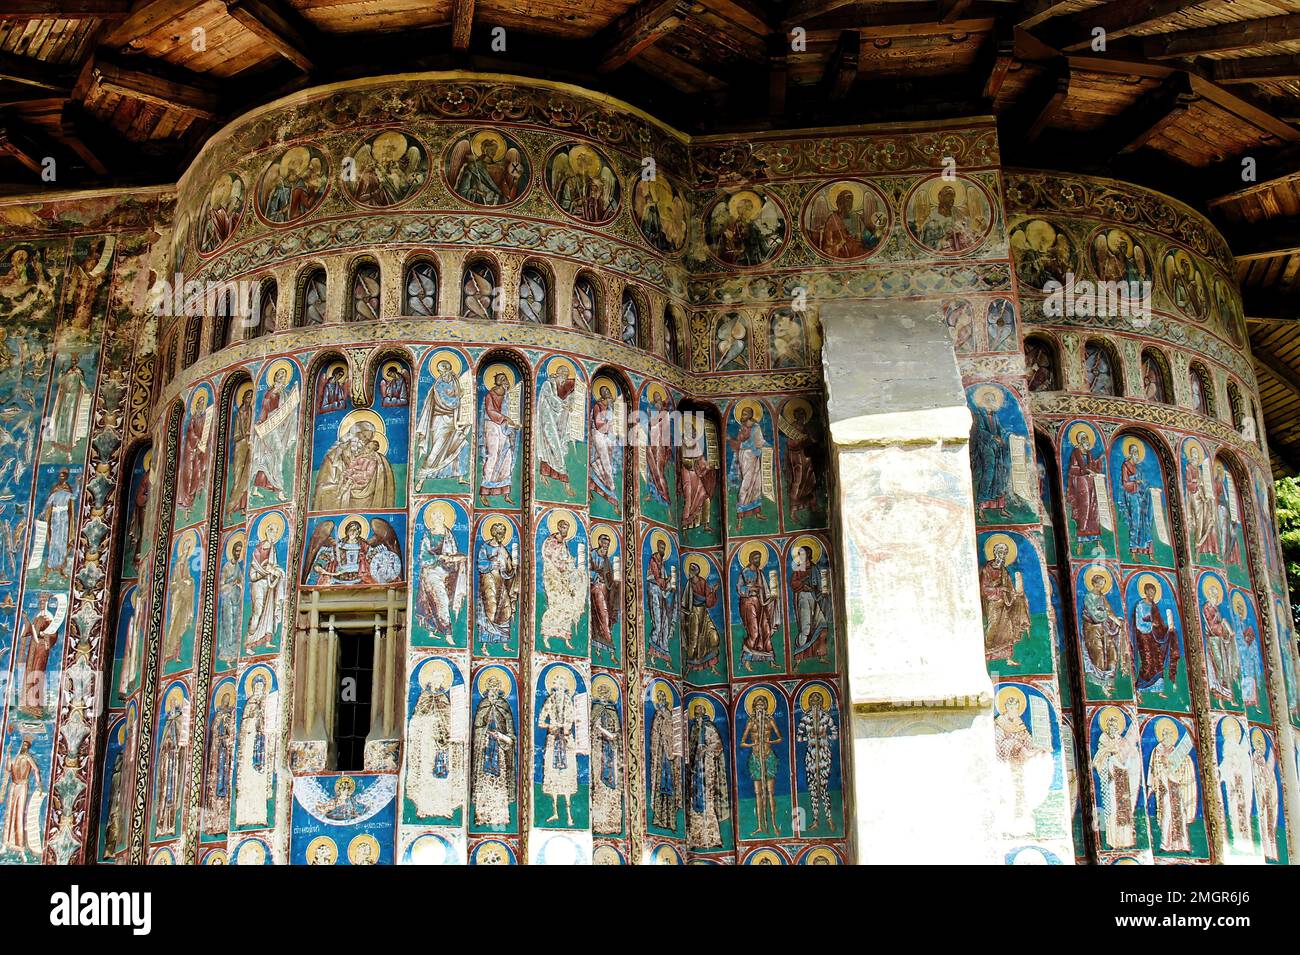 Monastero di Voronet, fondata nel 15th ° secolo, situato a Voronet, Romania.Stone edificio religioso della chiesa cristiana ortodossa costruita con pareti dipinte Foto Stock